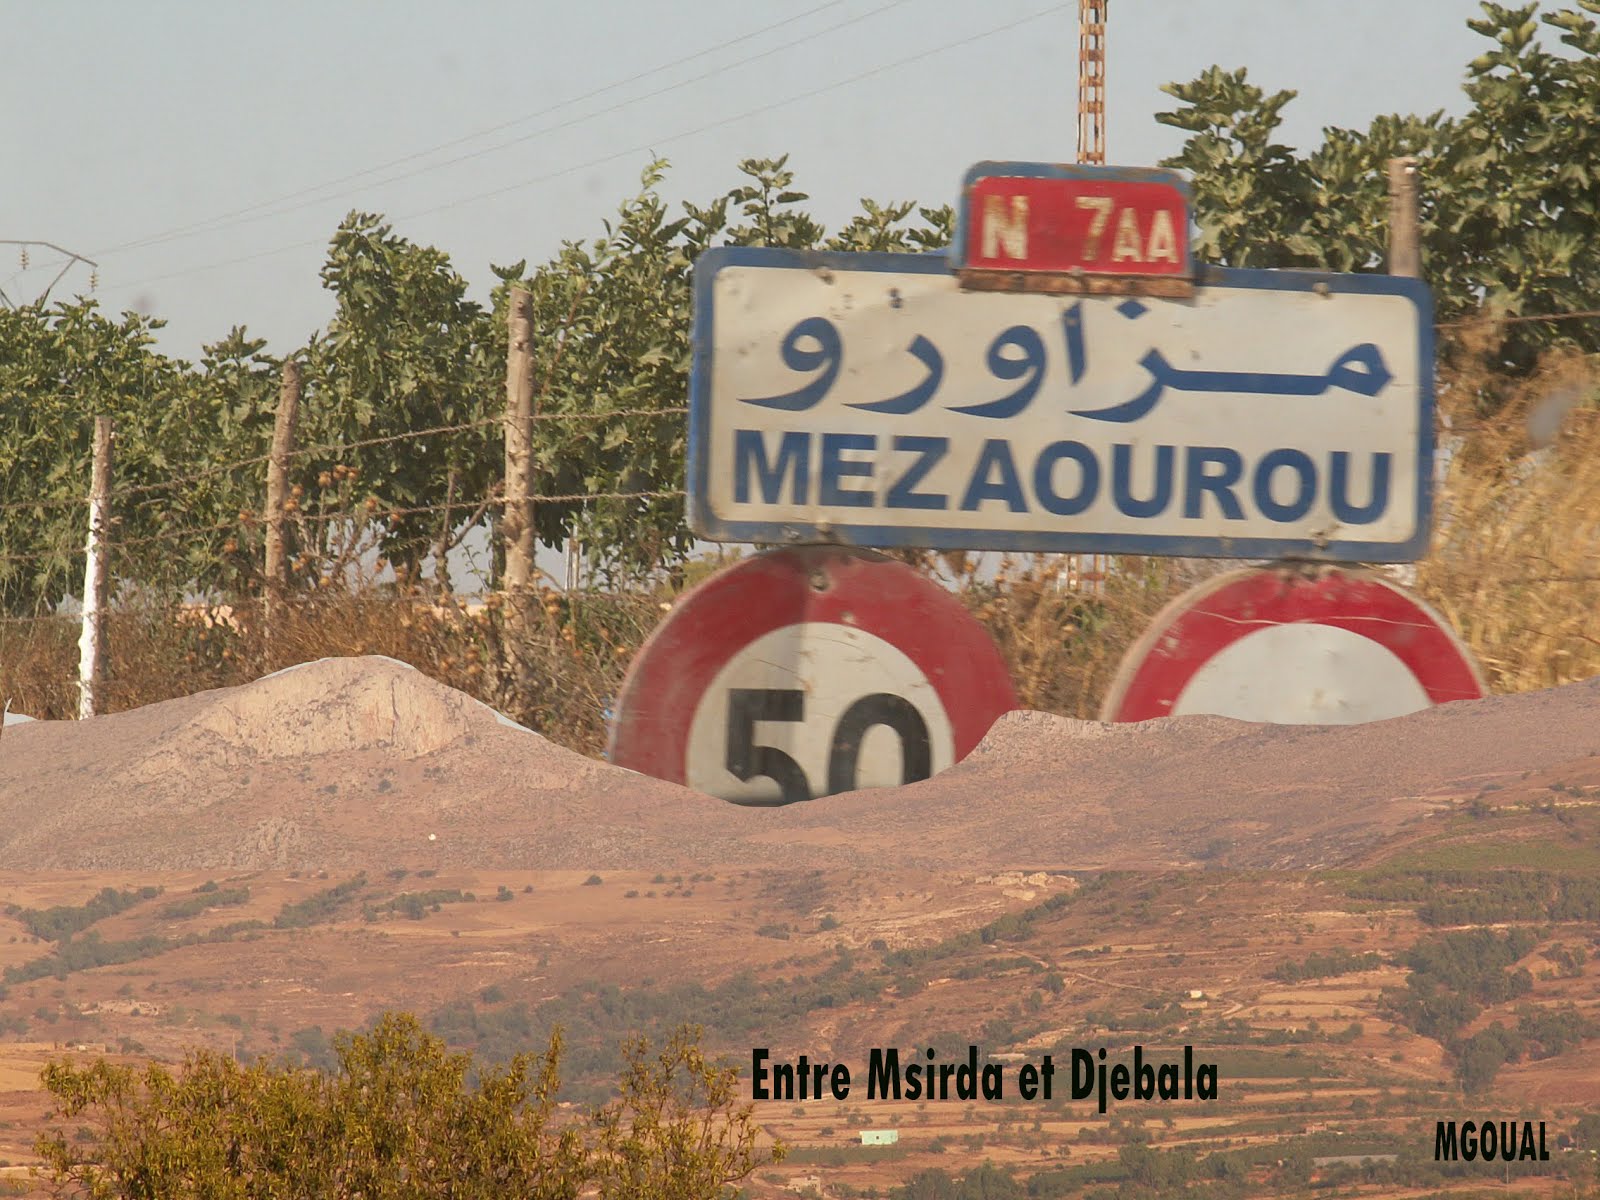 Mezaourou